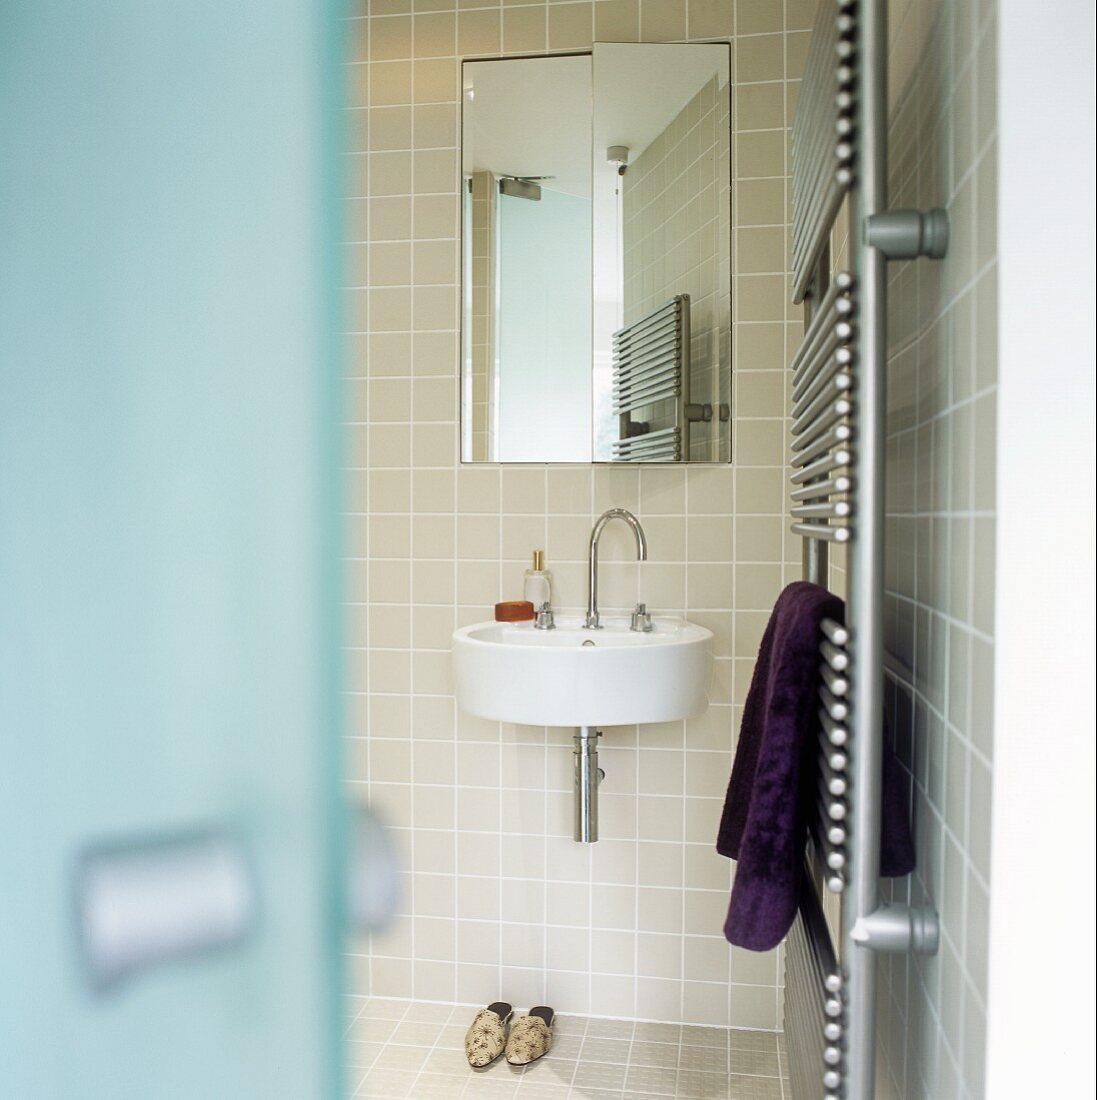 Blick in ein Badezimmer mit Handtuchtrockner